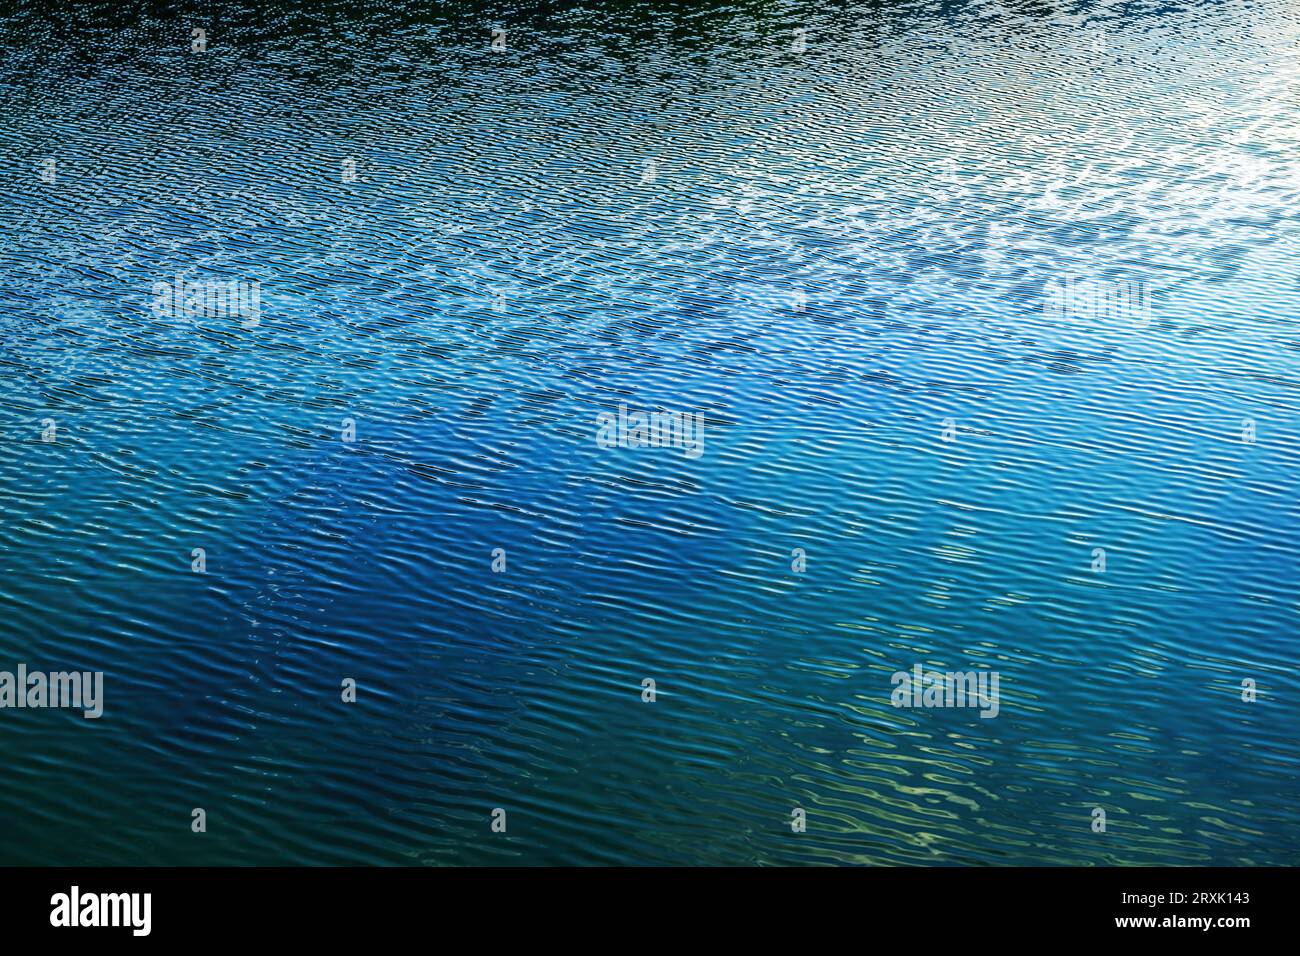 Ondulazioni sulla superficie d'acqua del lago glaciale sloveno Bohhinj create dalla brezza leggera e da un paesaggio sereno Foto Stock